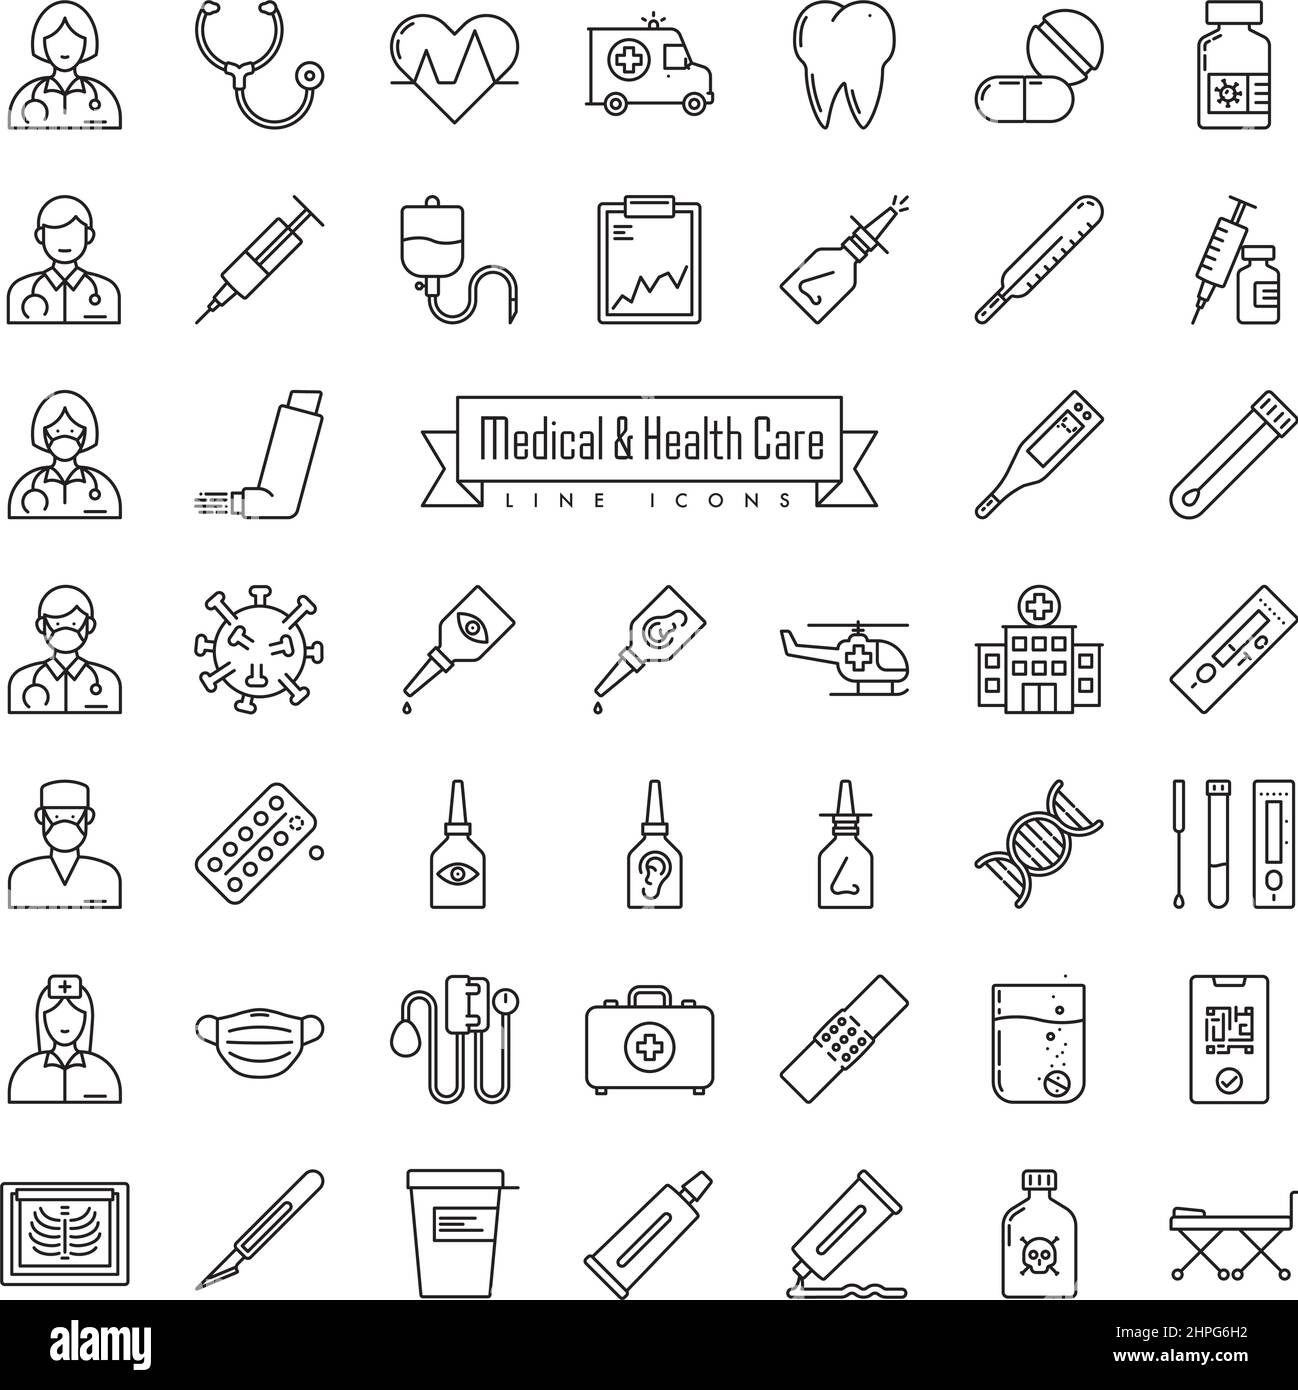 Symbolsammlung für die medizinische Versorgung und medizinische Linie. Skizzieren Sie Symbole für Medizin, Pharmazeutik, medizinische Geräte und Krankheiten. Stock Vektor